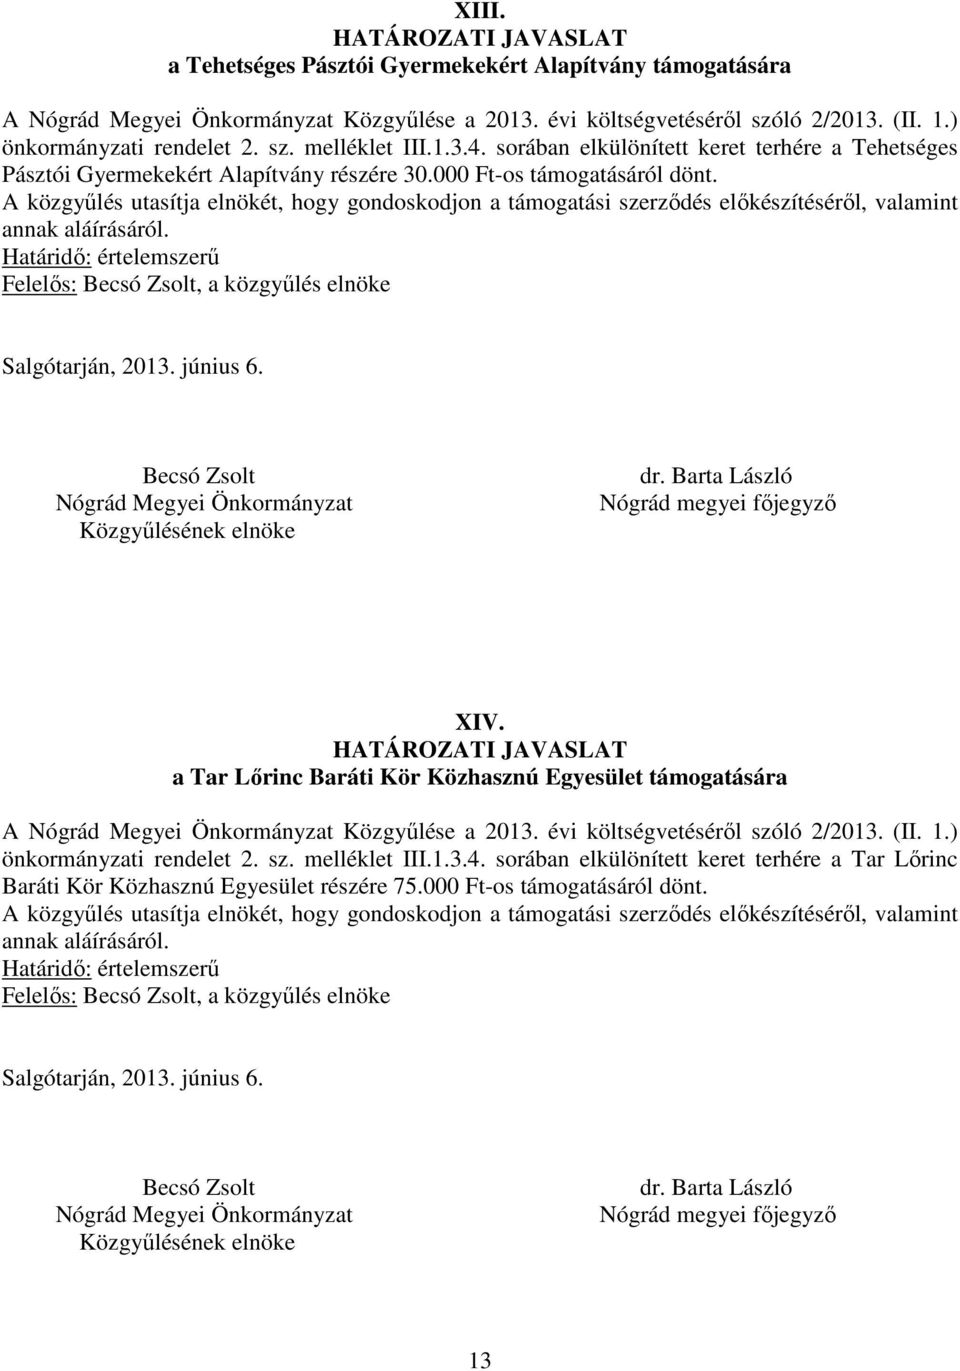 a Tar Lőrinc Baráti Kör Közhasznú Egyesület támogatására A Közgyűlése a 2013. évi költségvetéséről szóló 2/2013. (II. 1.) önkormányzati rendelet 2. sz. melléklet III.